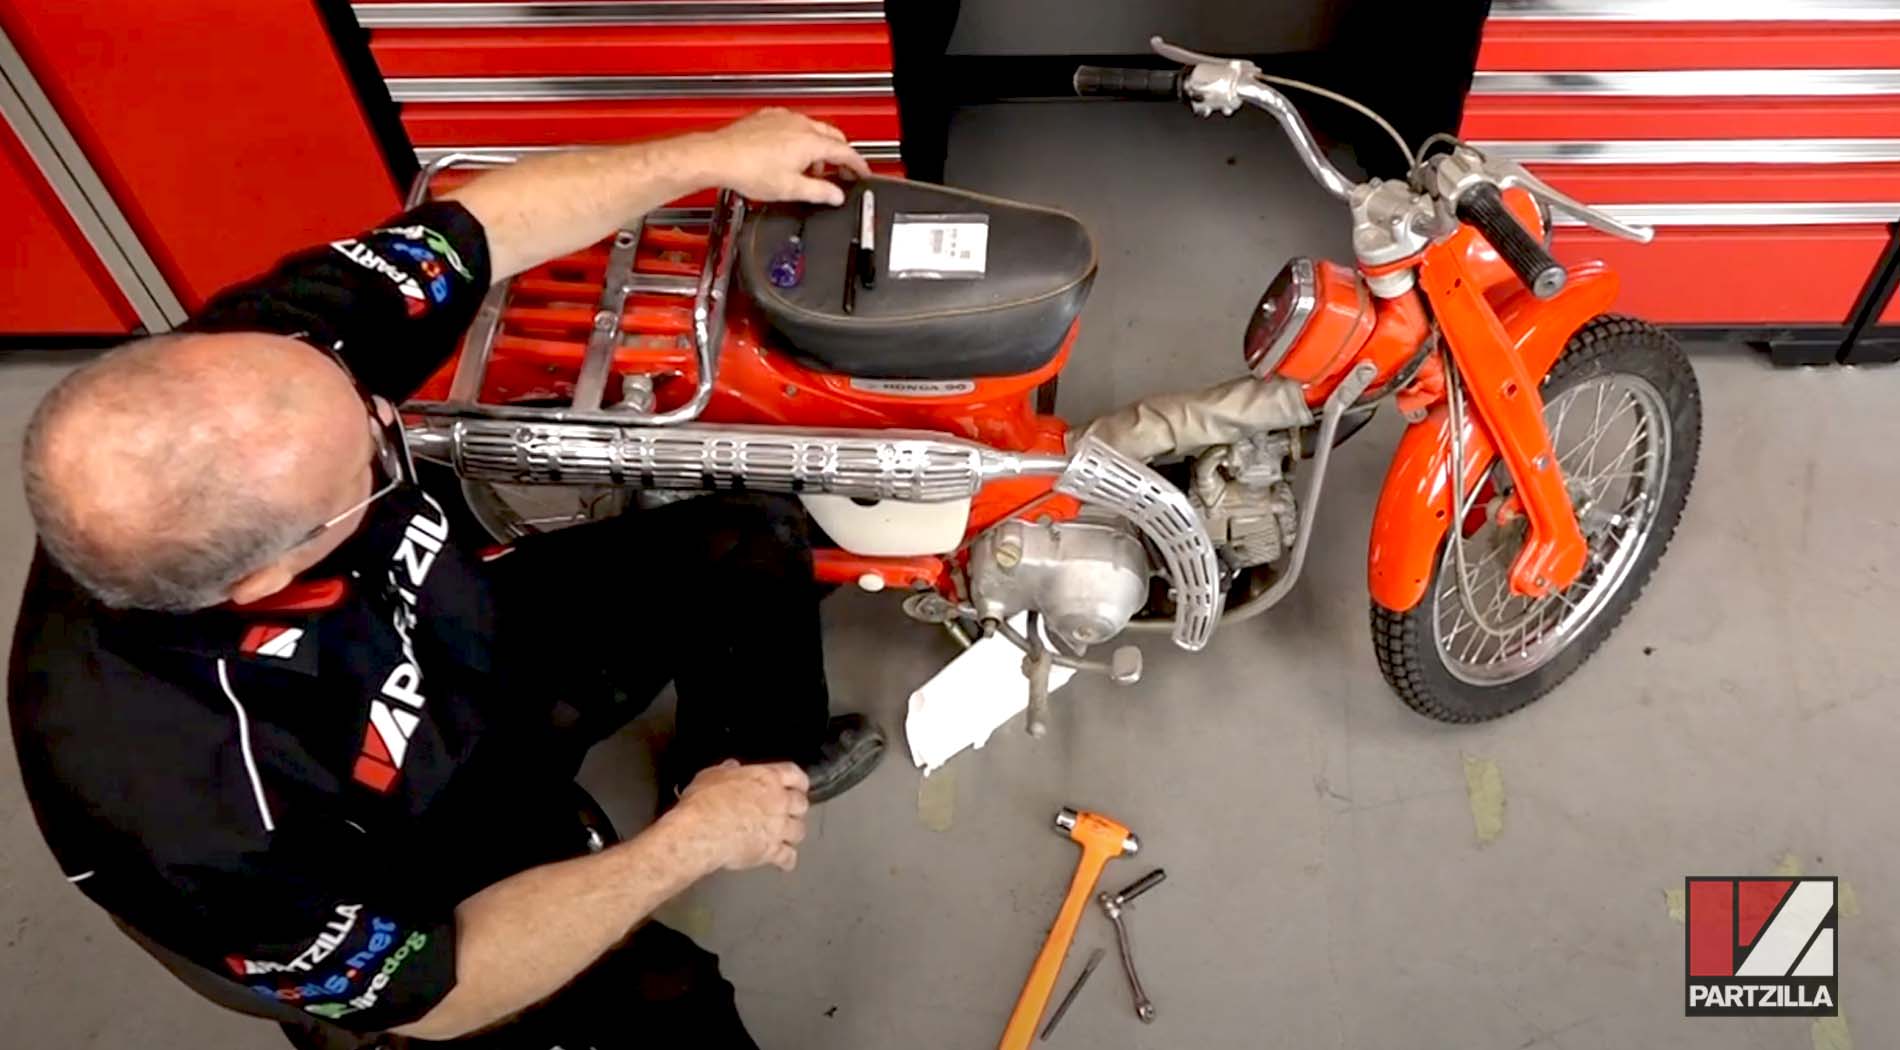 Honda CT90 motorcycle kickstart seal replacement